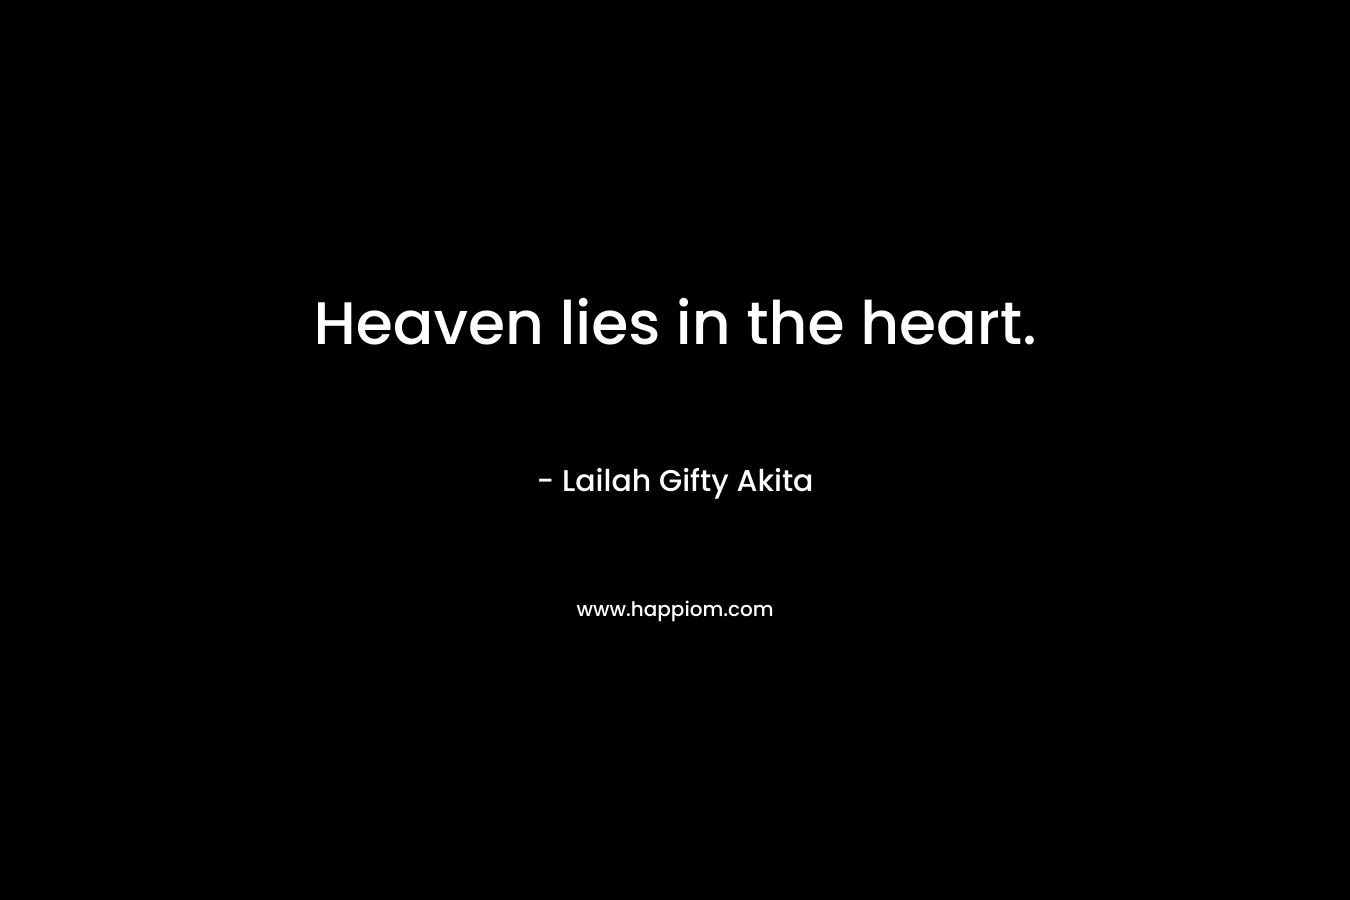 Heaven lies in the heart.